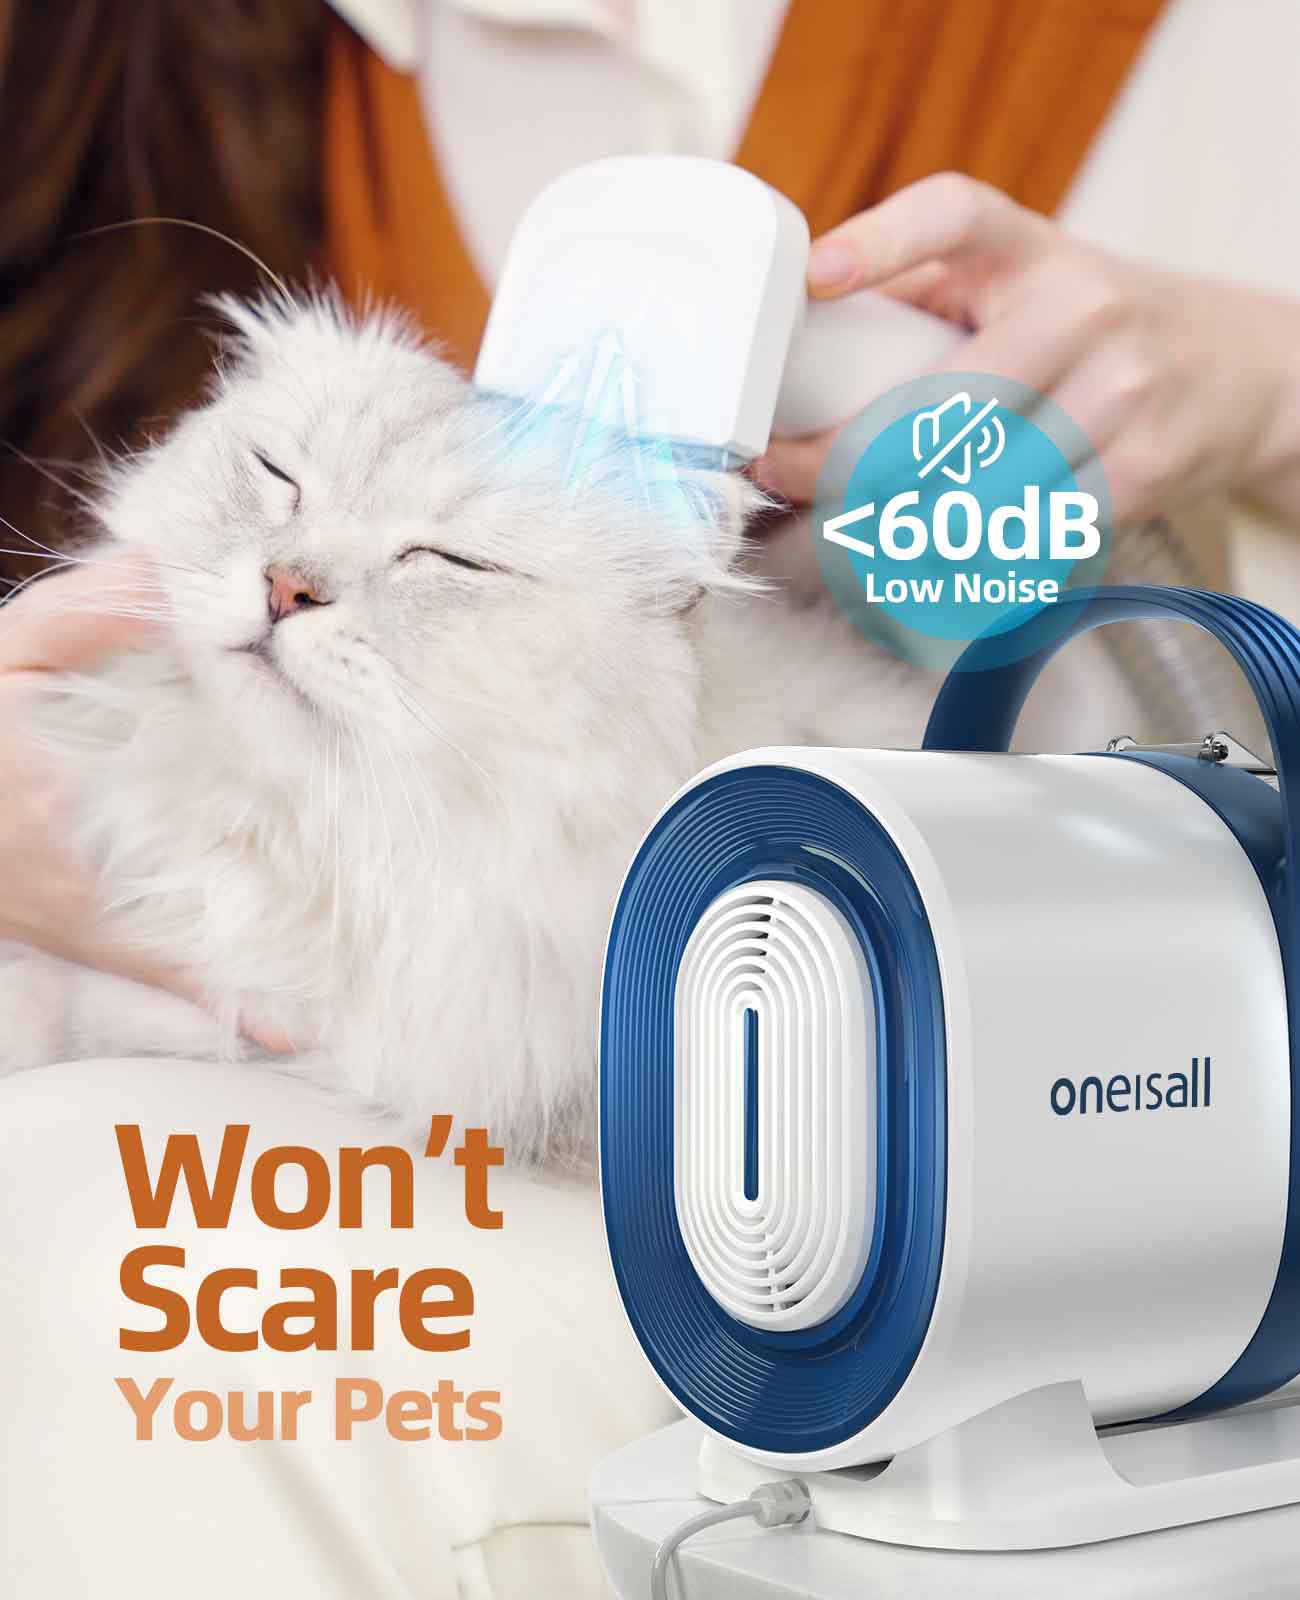 Oneisall 애완 동물 미용 키트 및 진공 흡입 99% 두꺼운 & 얇은 애완 동물 머리를 흘리기위한 애완 동물 미용 도구-7 PCS